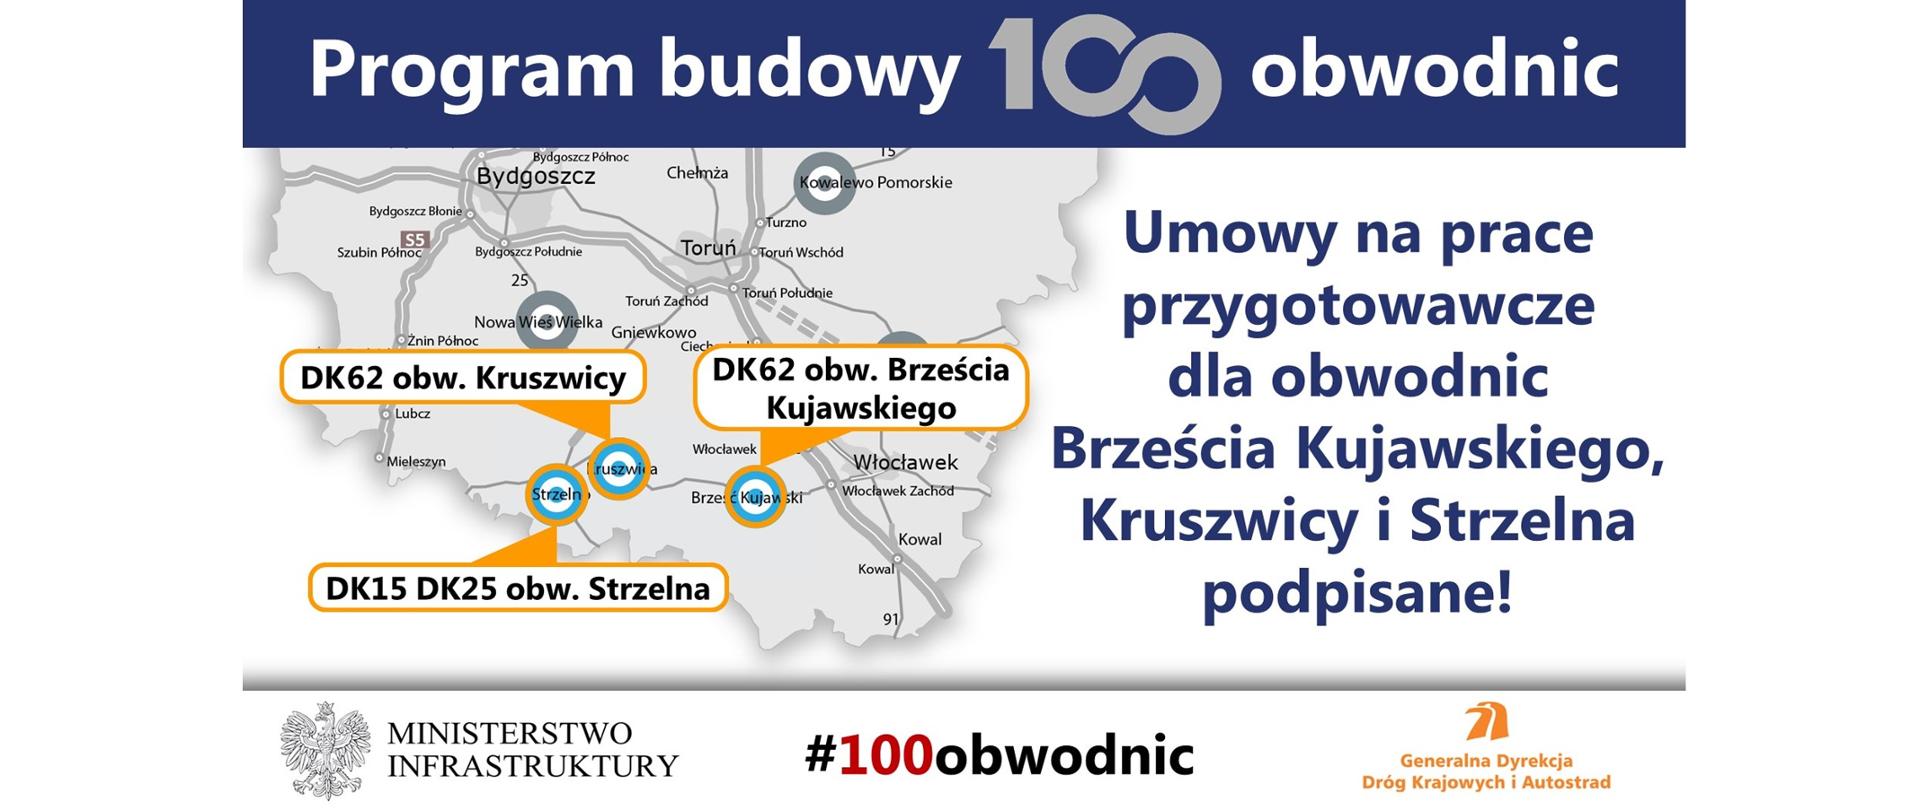 Rozpoczynają się prace nad dokumentacją projektową dla obwodnic Strzelna, Kruszwicy i Brześcia Kujawskiego - infografika